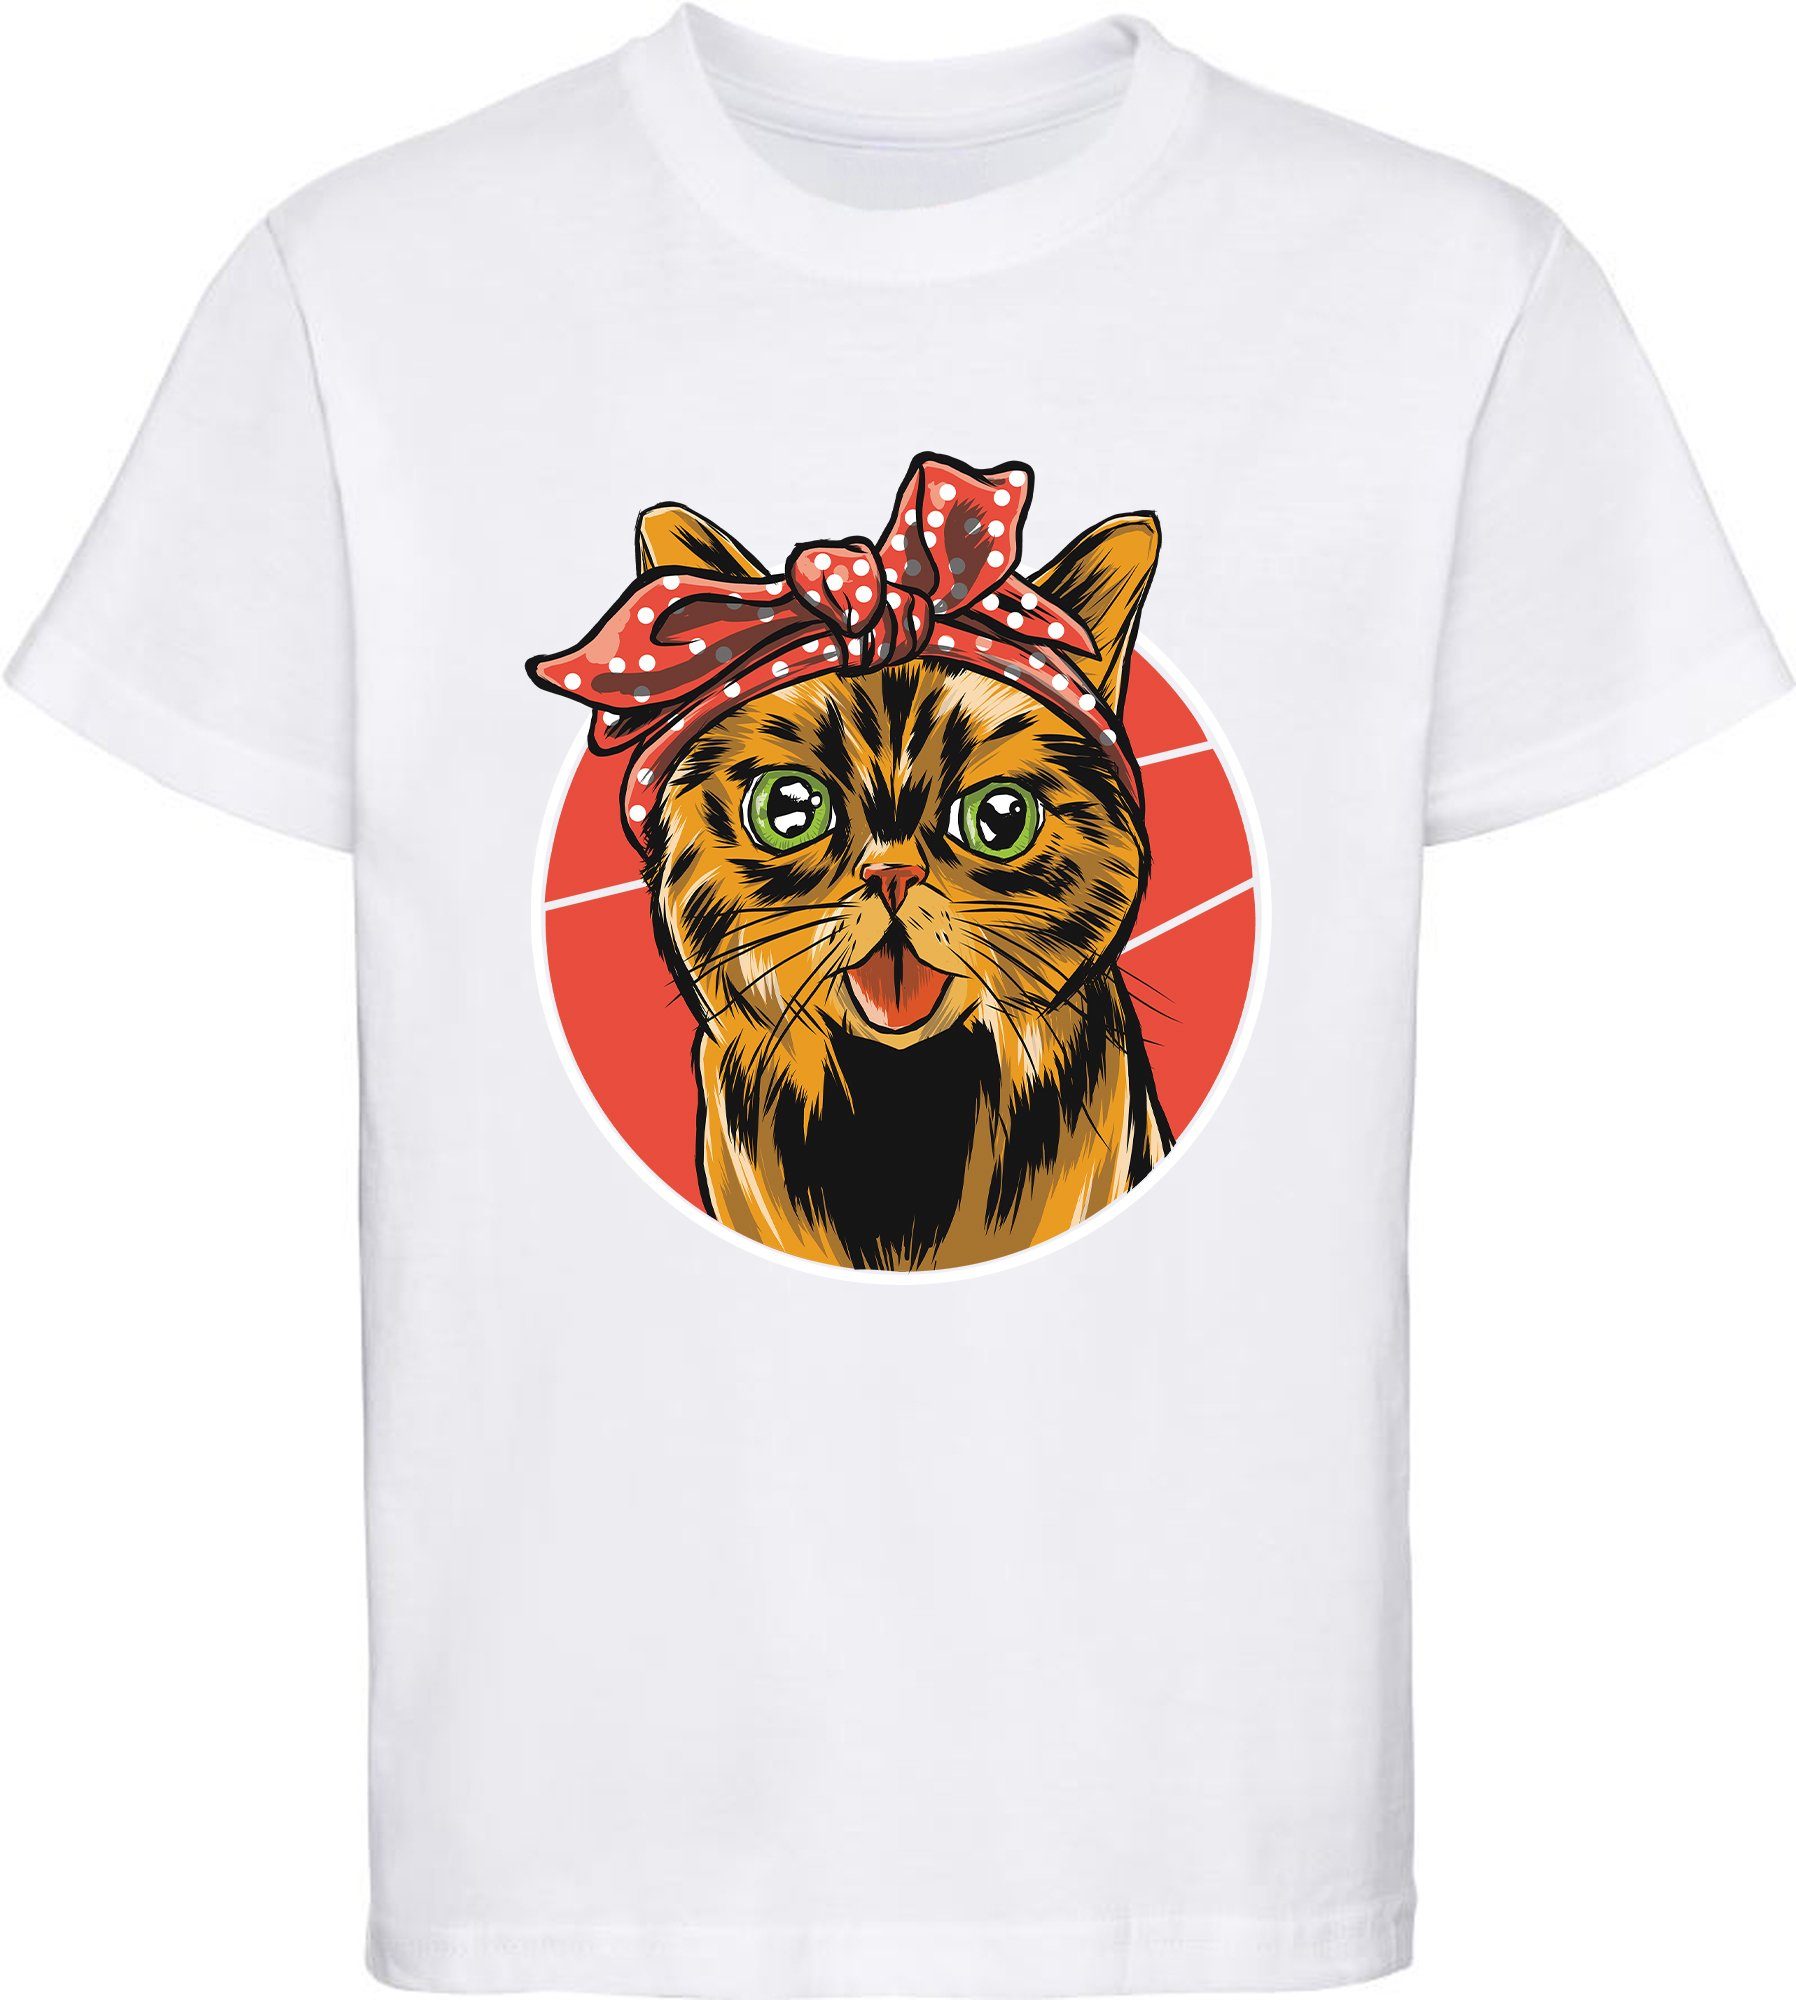 MyDesign24 T-Shirt bedrucktes rot, i103 Mädchen Katze weiß, Katze, mit weiss Print-Shirt Kinder mit Schleife schwarz, rosa, Baumwollshirt